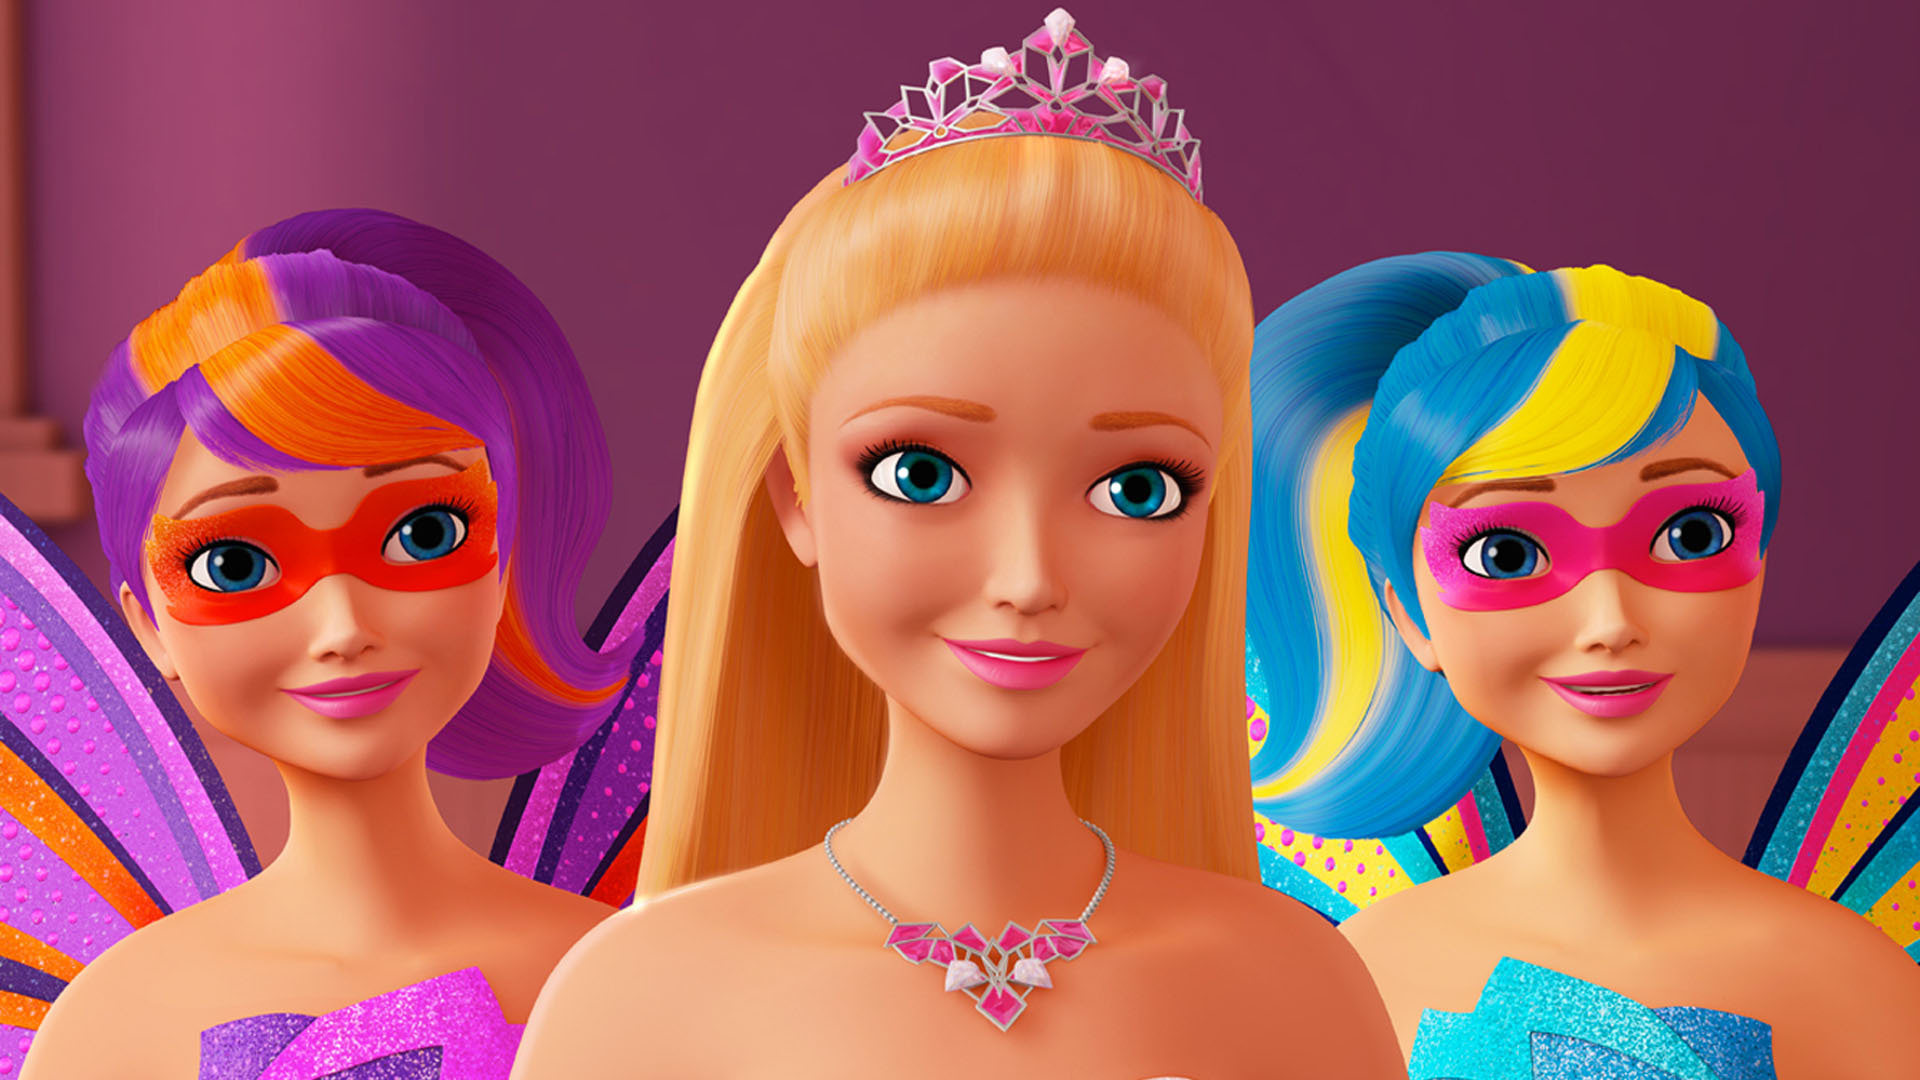 Скачать обои Barbie: Супер Принцесса на телефон бесплатно